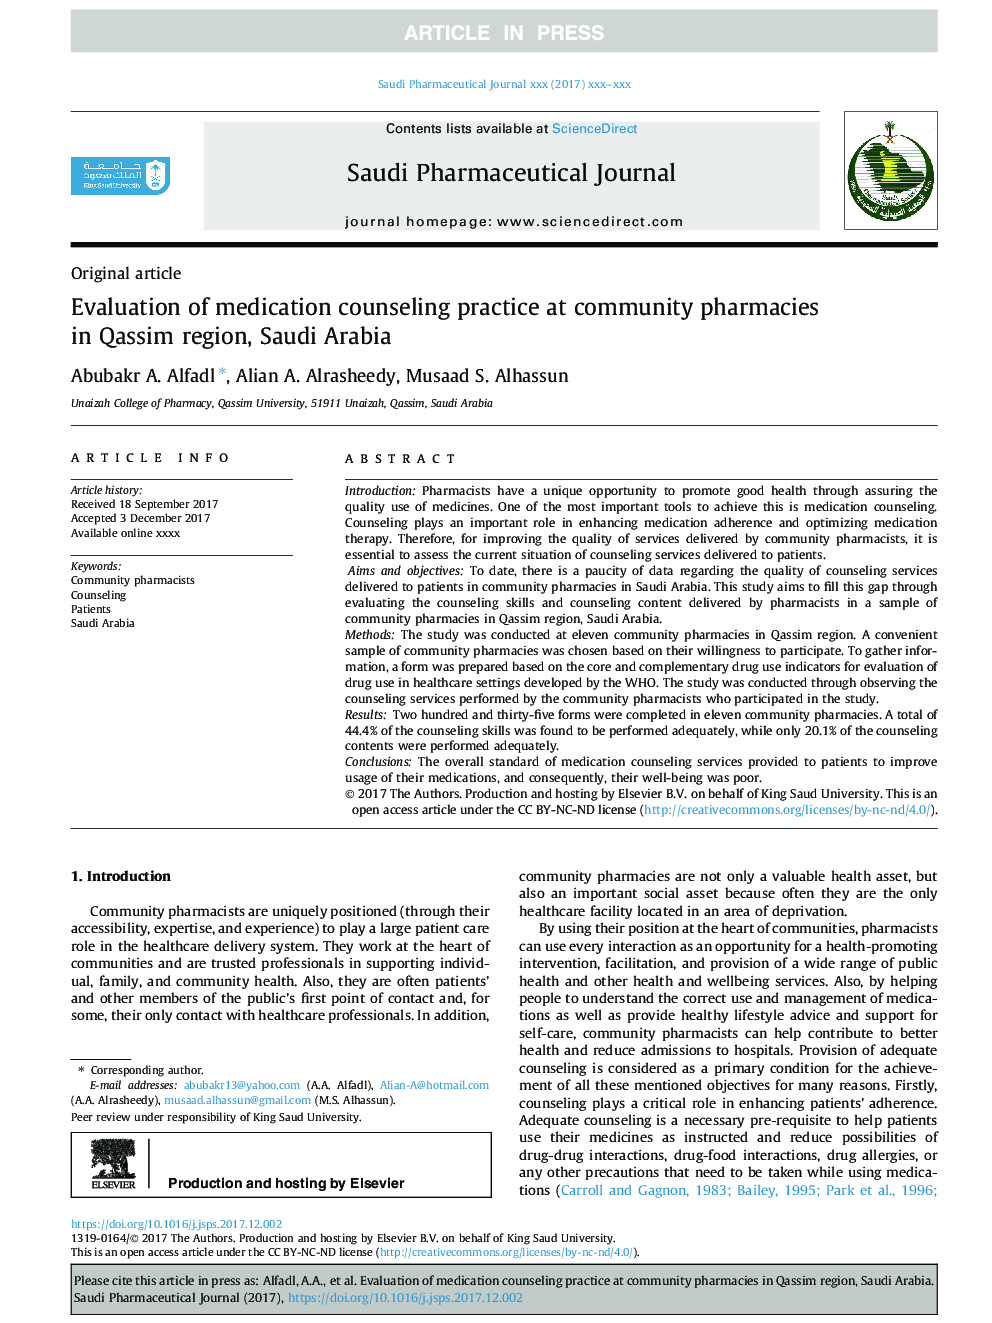 ارزیابی عملکرد مشاوره درمانی در داروخانه های محلی در منطقه قاسم عربستان سعودی 